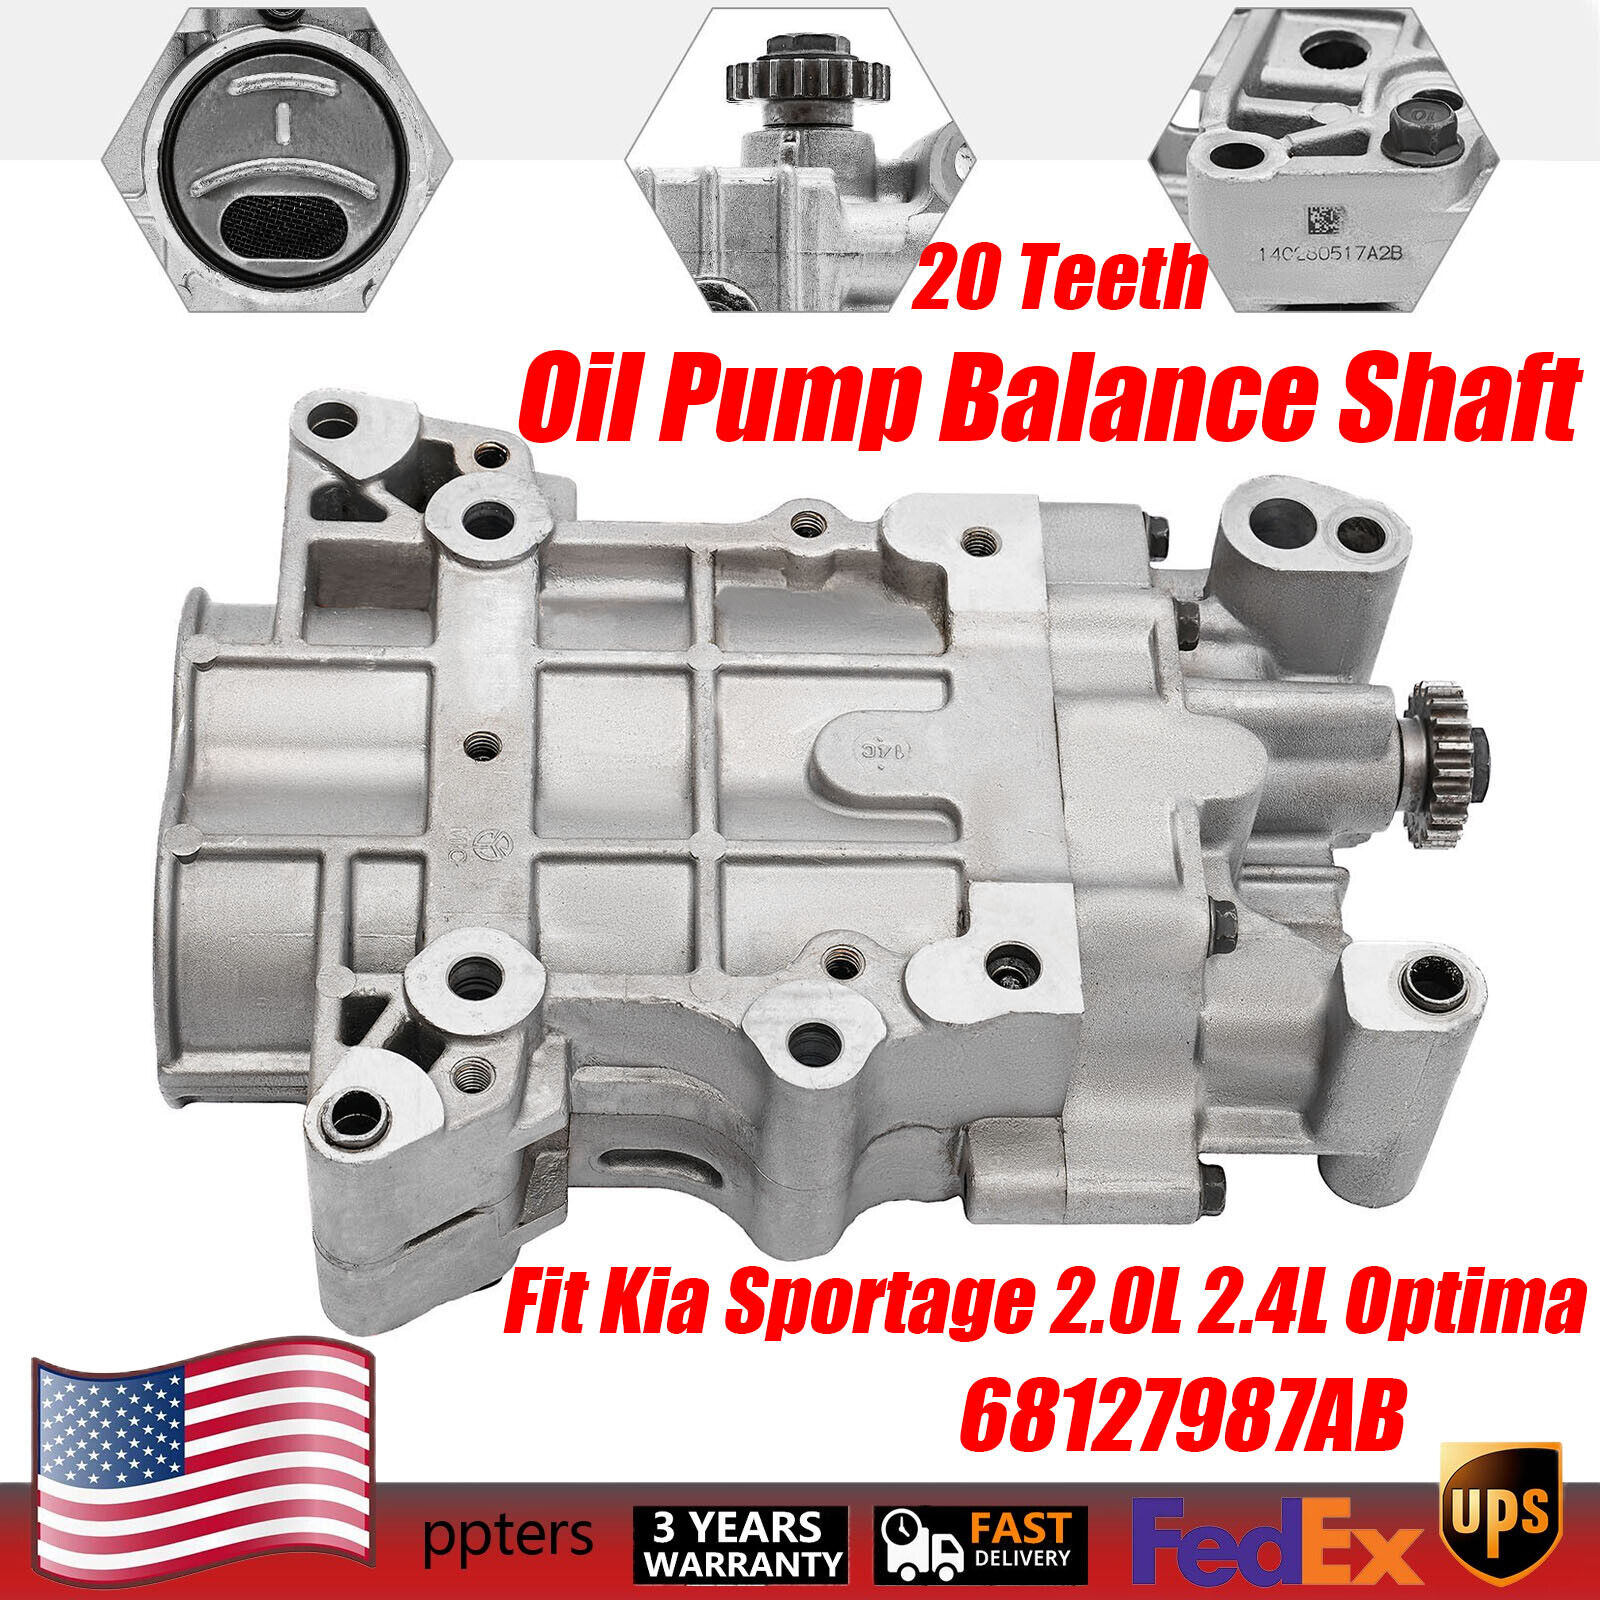 Oil Pump 20 Teeth Balance Shaft Fit Kia Sportage 2.0L 2.4L Optima 68127987AB